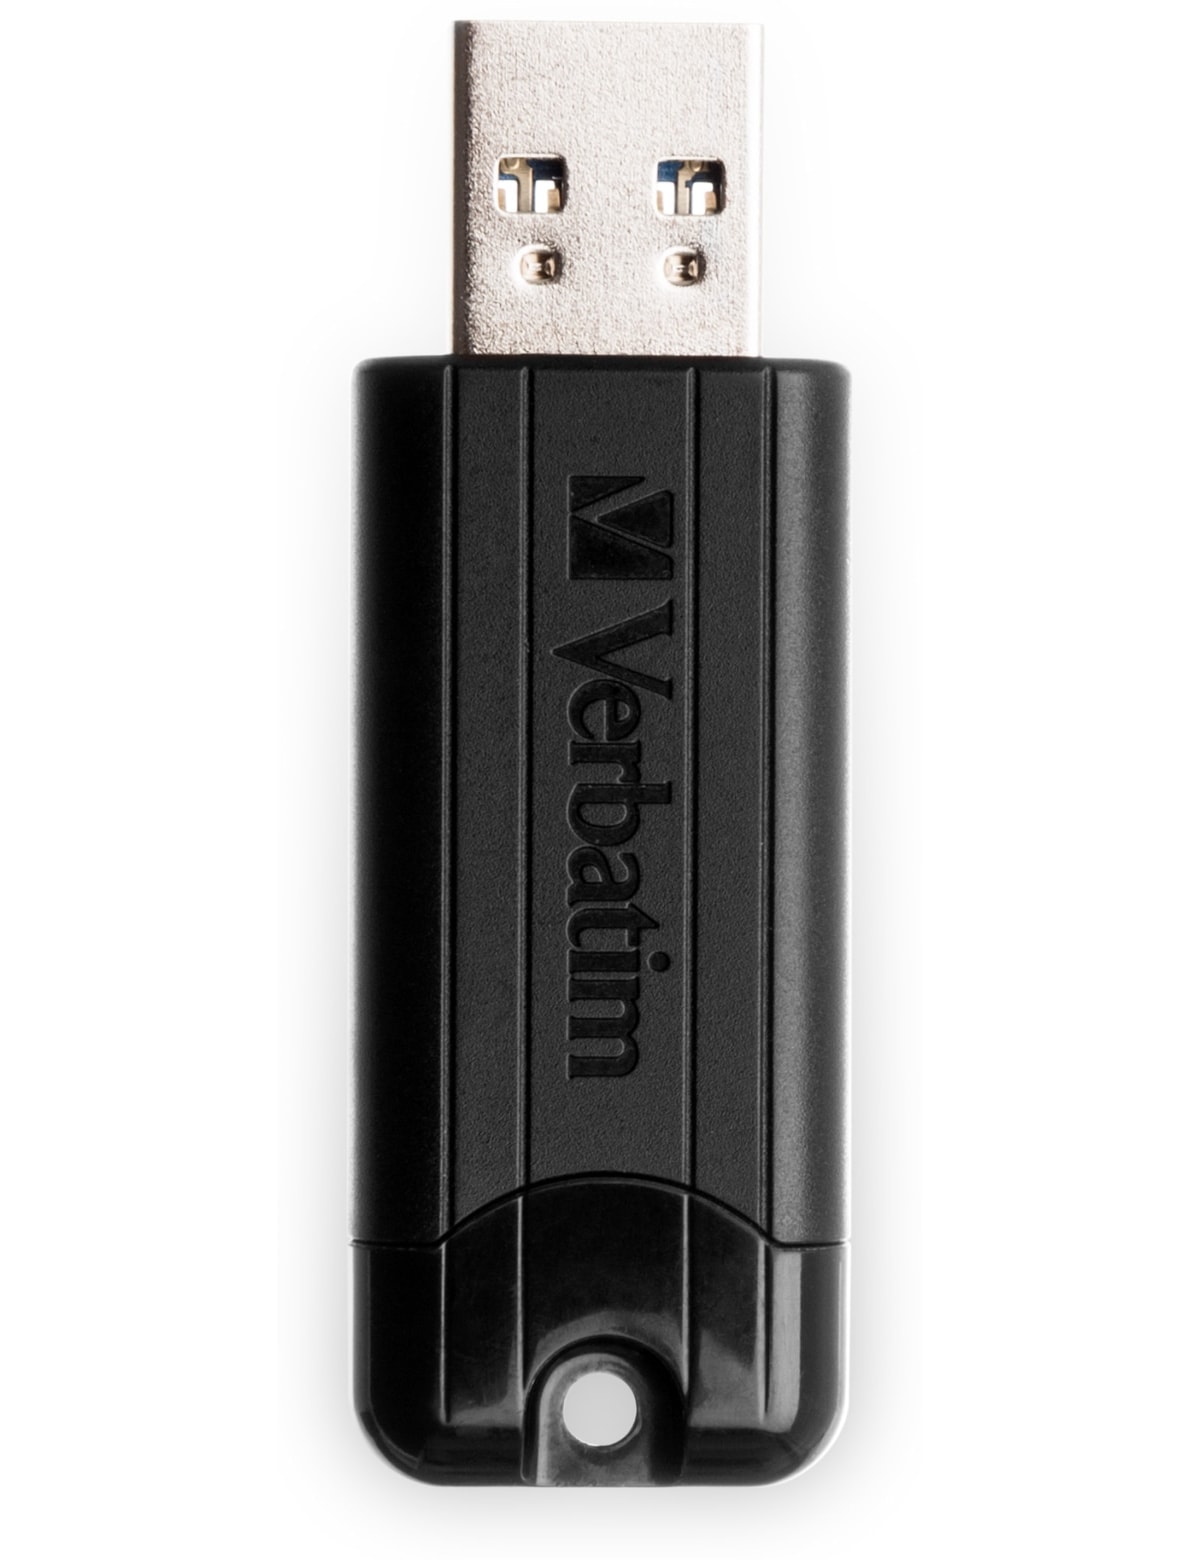 VERBATIM USB3.0 Stick PinStripe, 128 GB